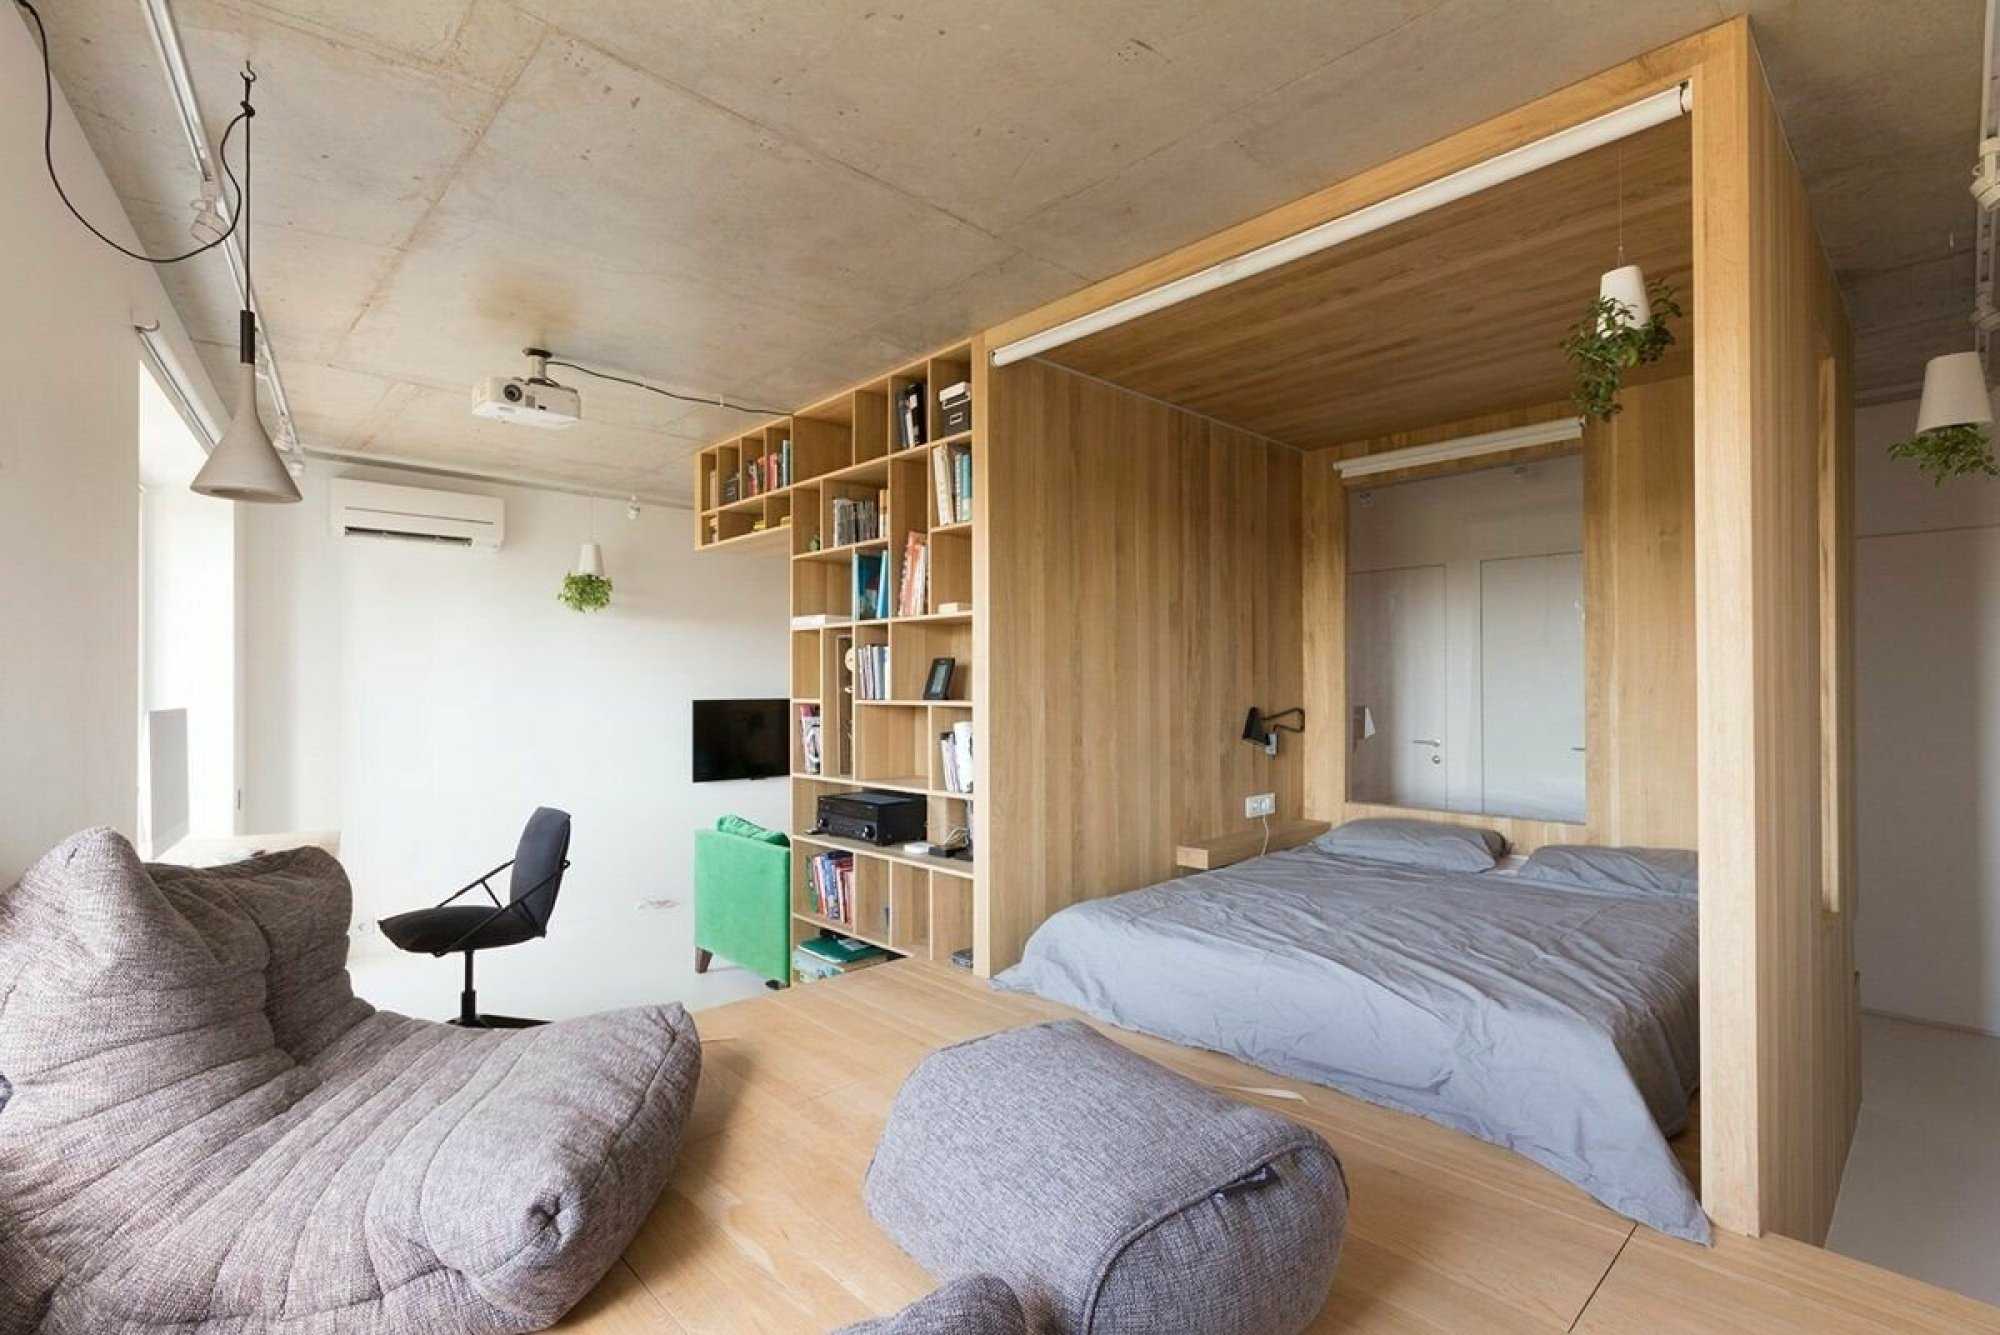 Подиум дома. Кровать за перегородкой. Спальное место в маленькой квартире. Спальня с высокими потолками. Кровать на подиуме в интерьере.